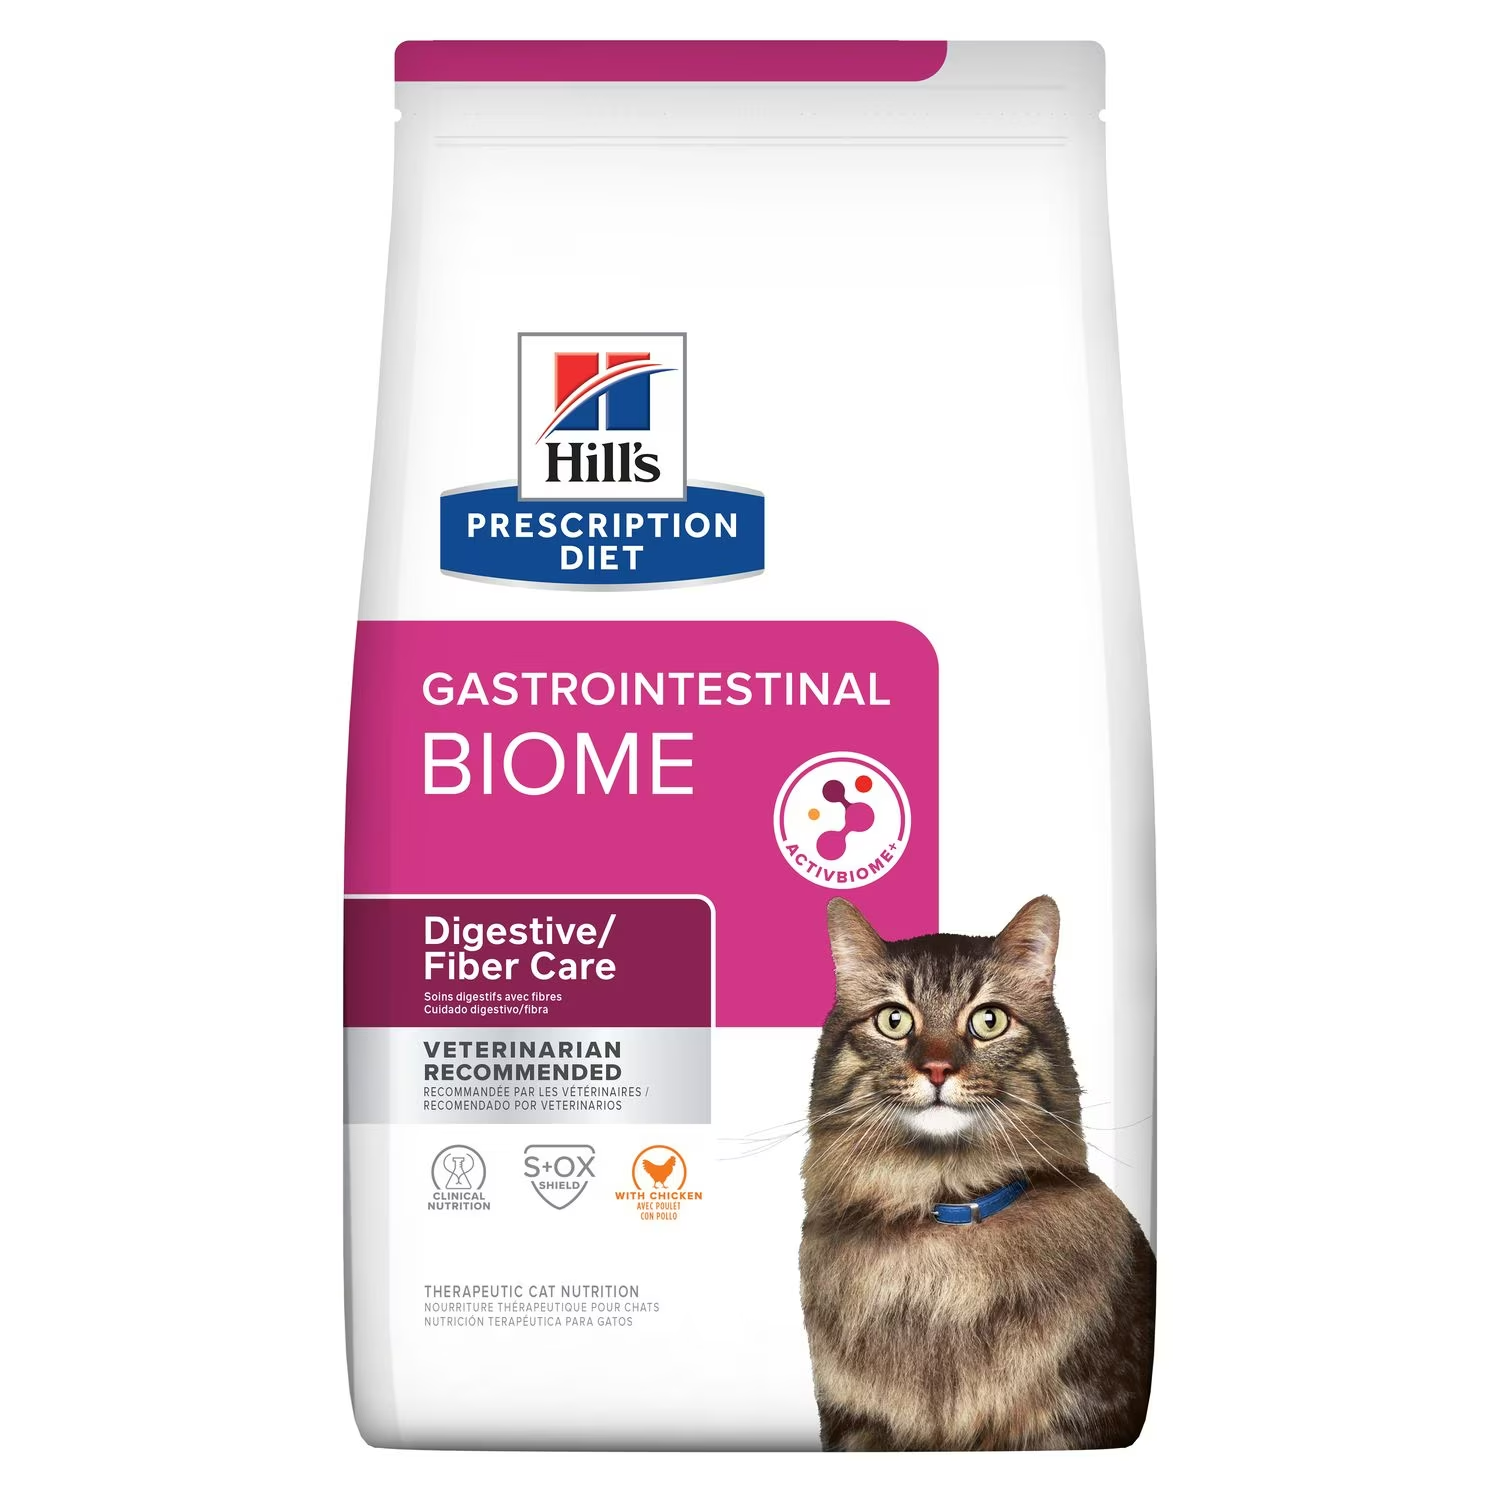 Hills Gastrointestinal Biome - Alimento para Gato Prescription Diet